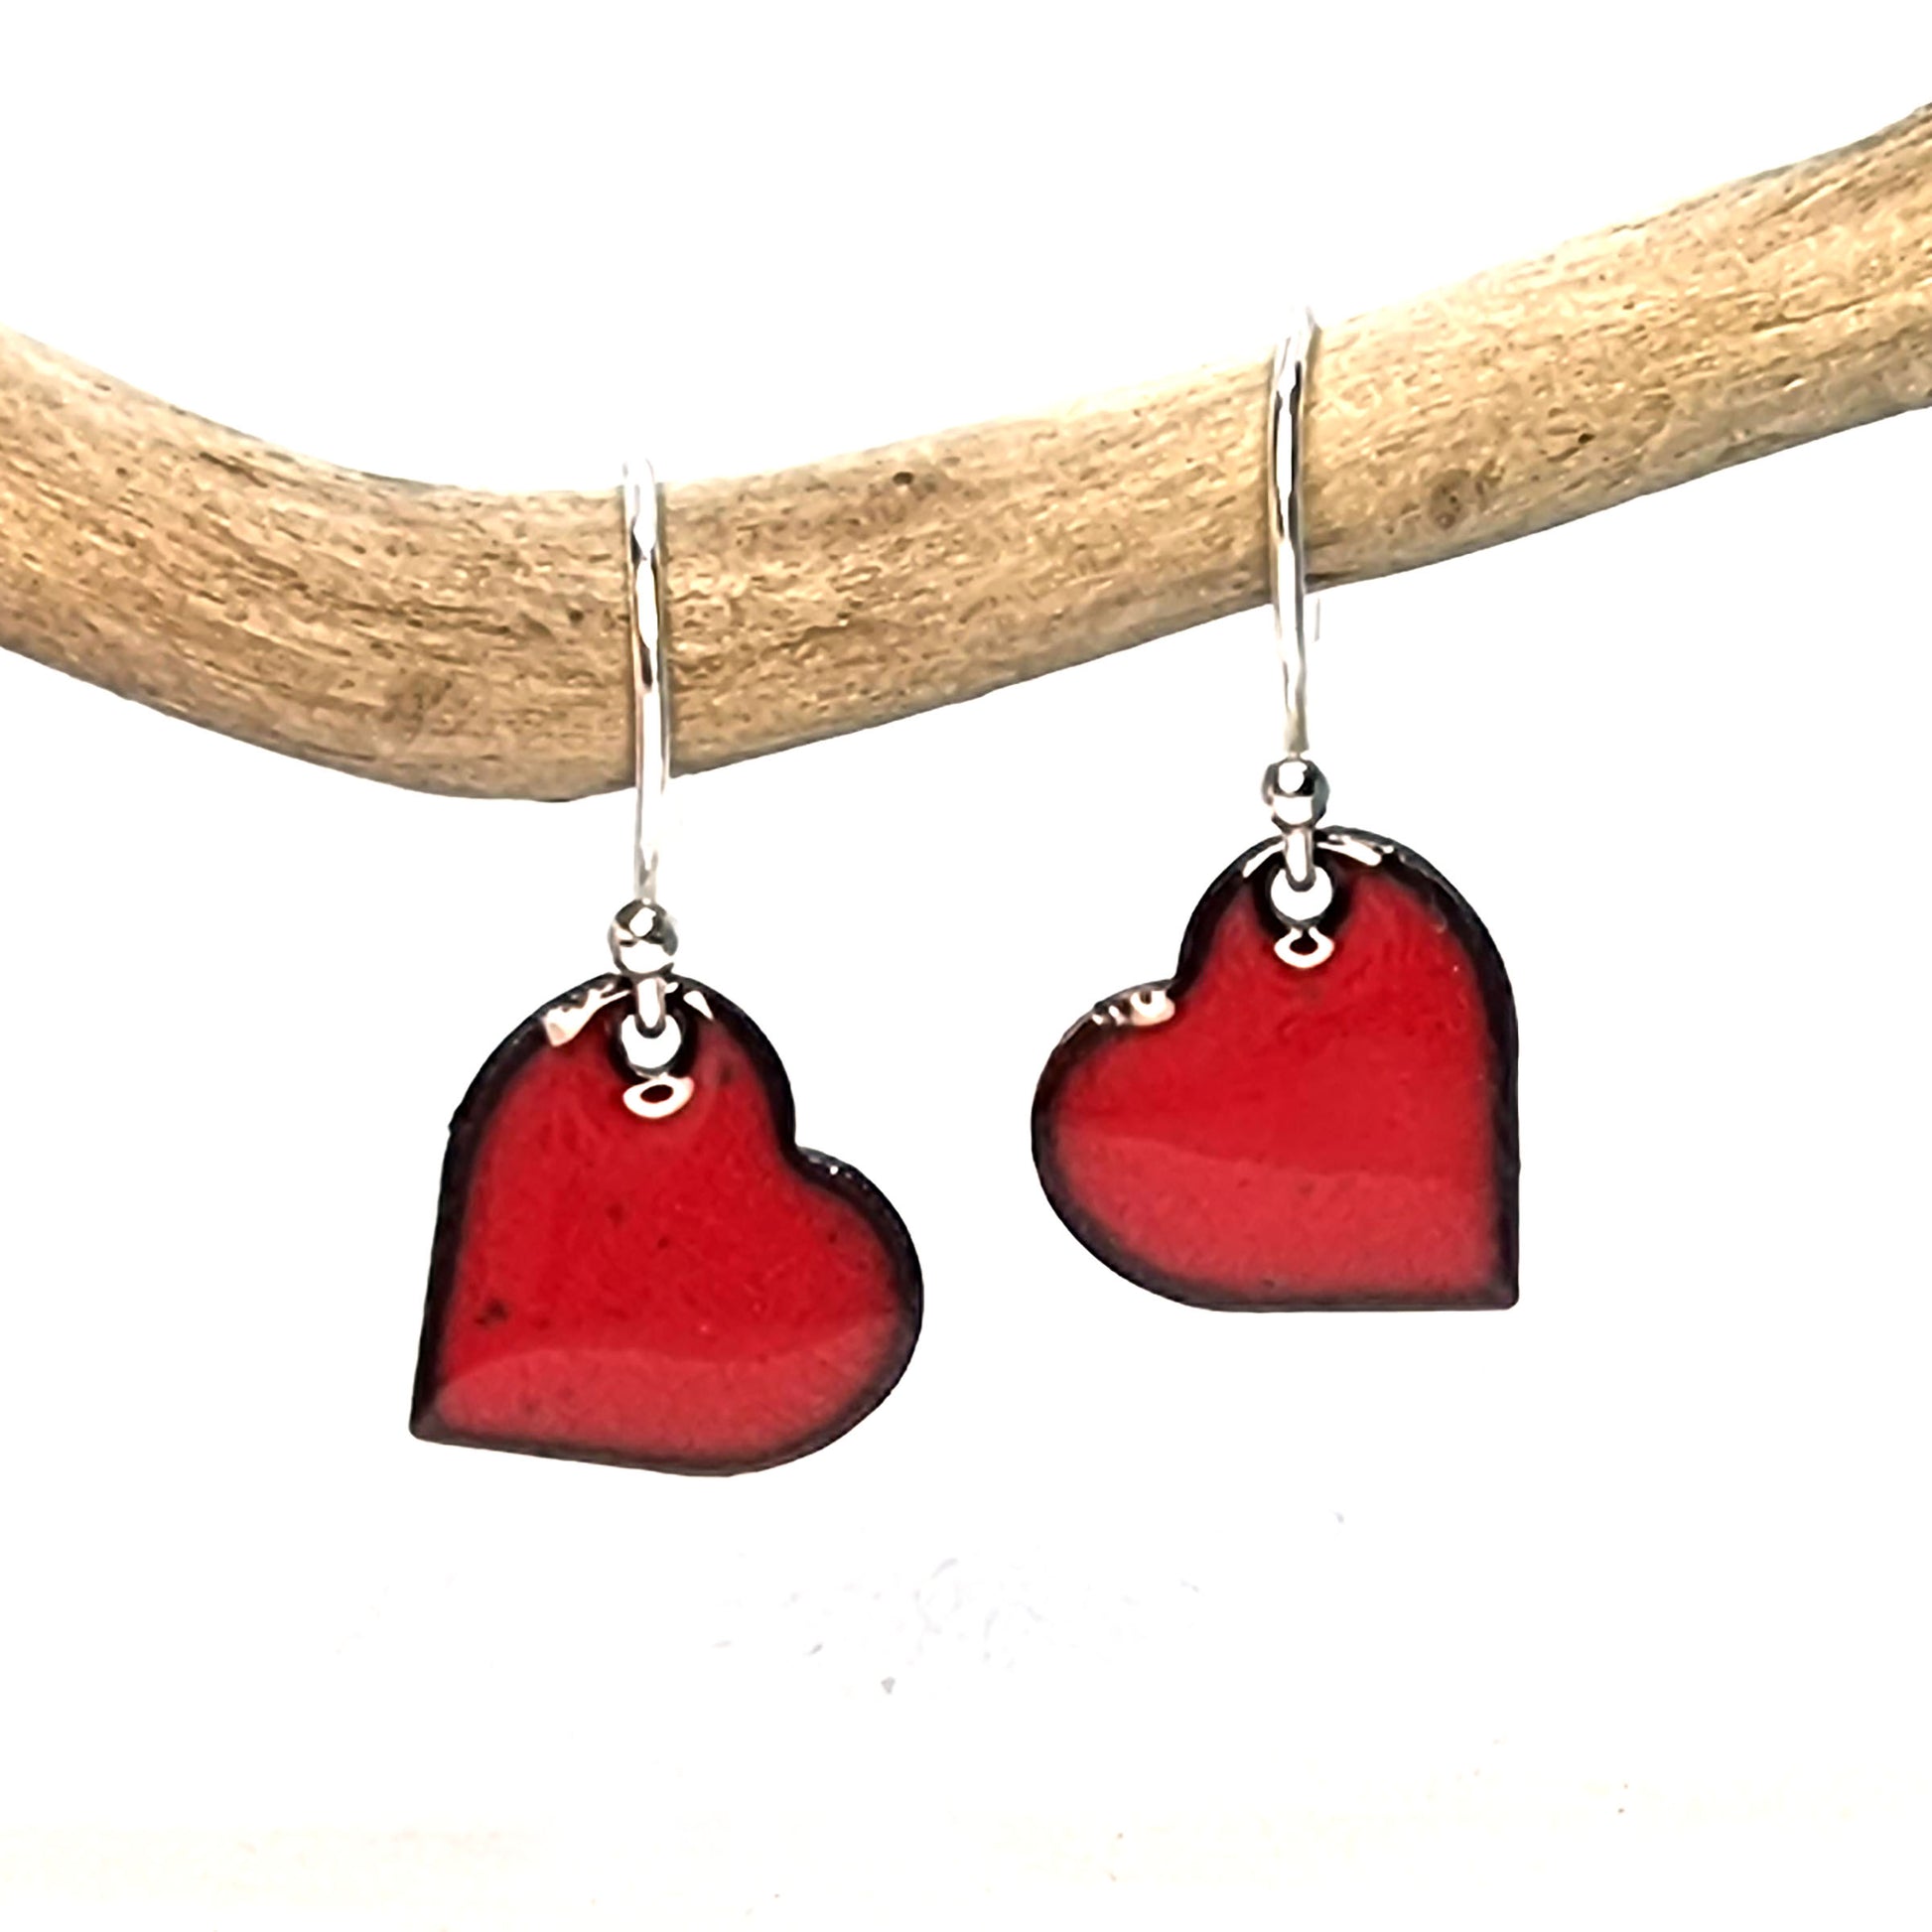 Red enamel heart drop earrings suspended on a twig